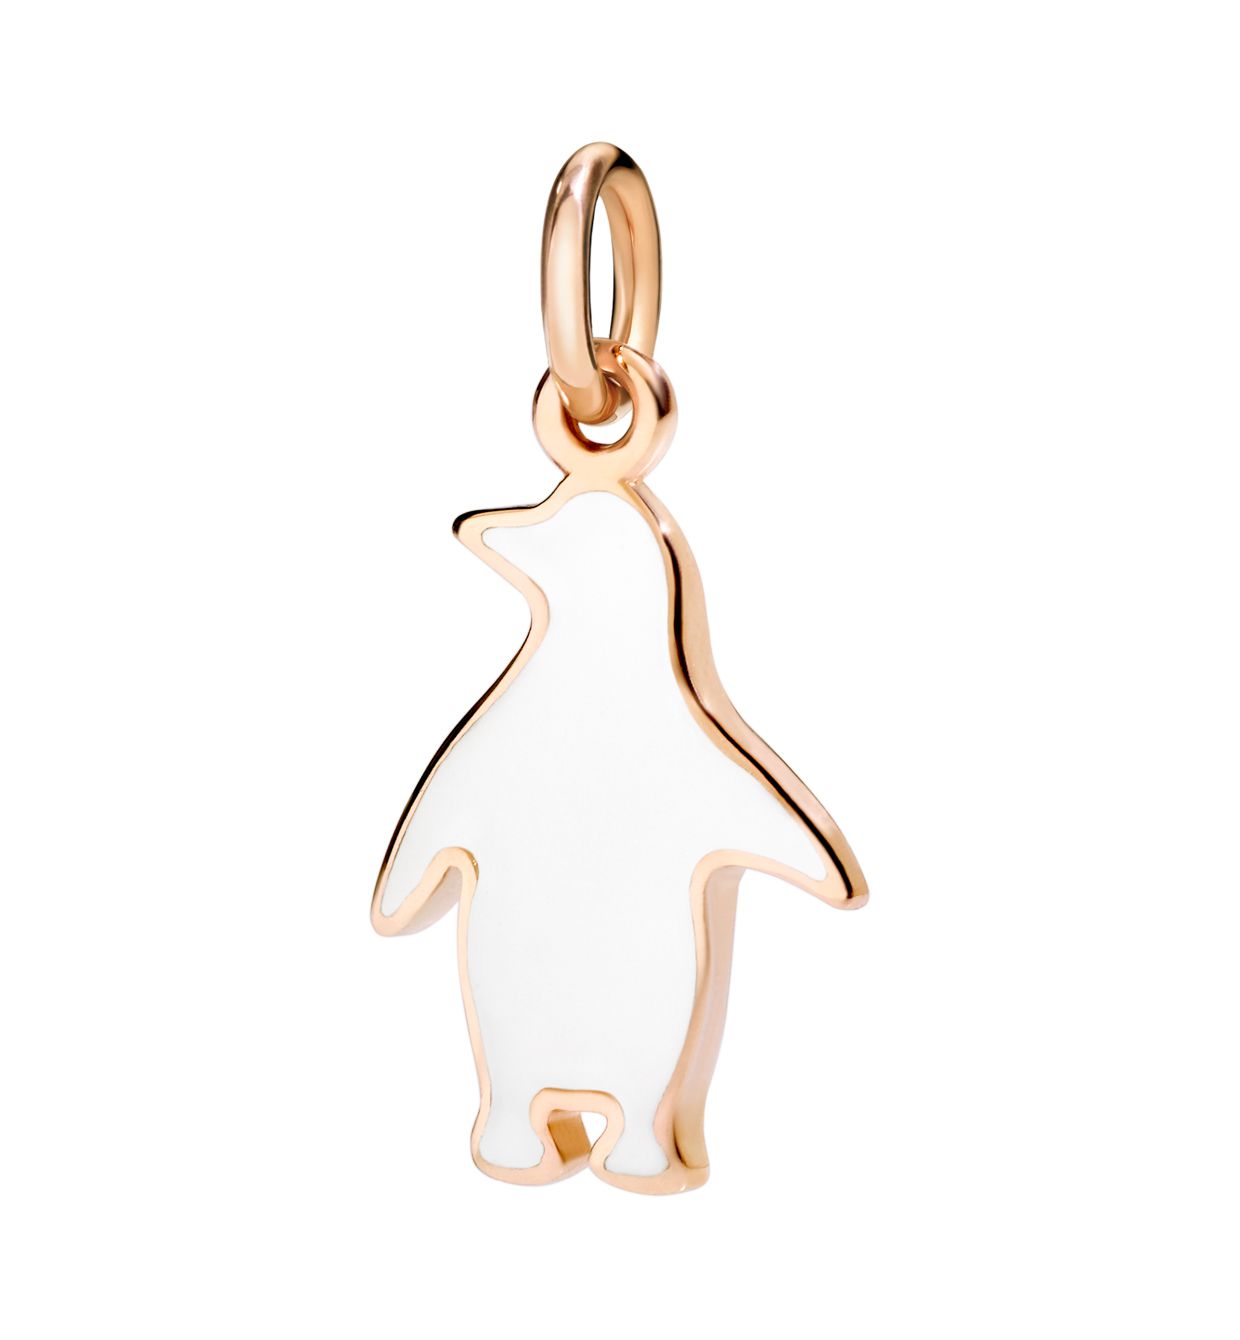 DoDo Penguin in 9kt Rose Gold with White Enamel - Orsini Jewellers NZ